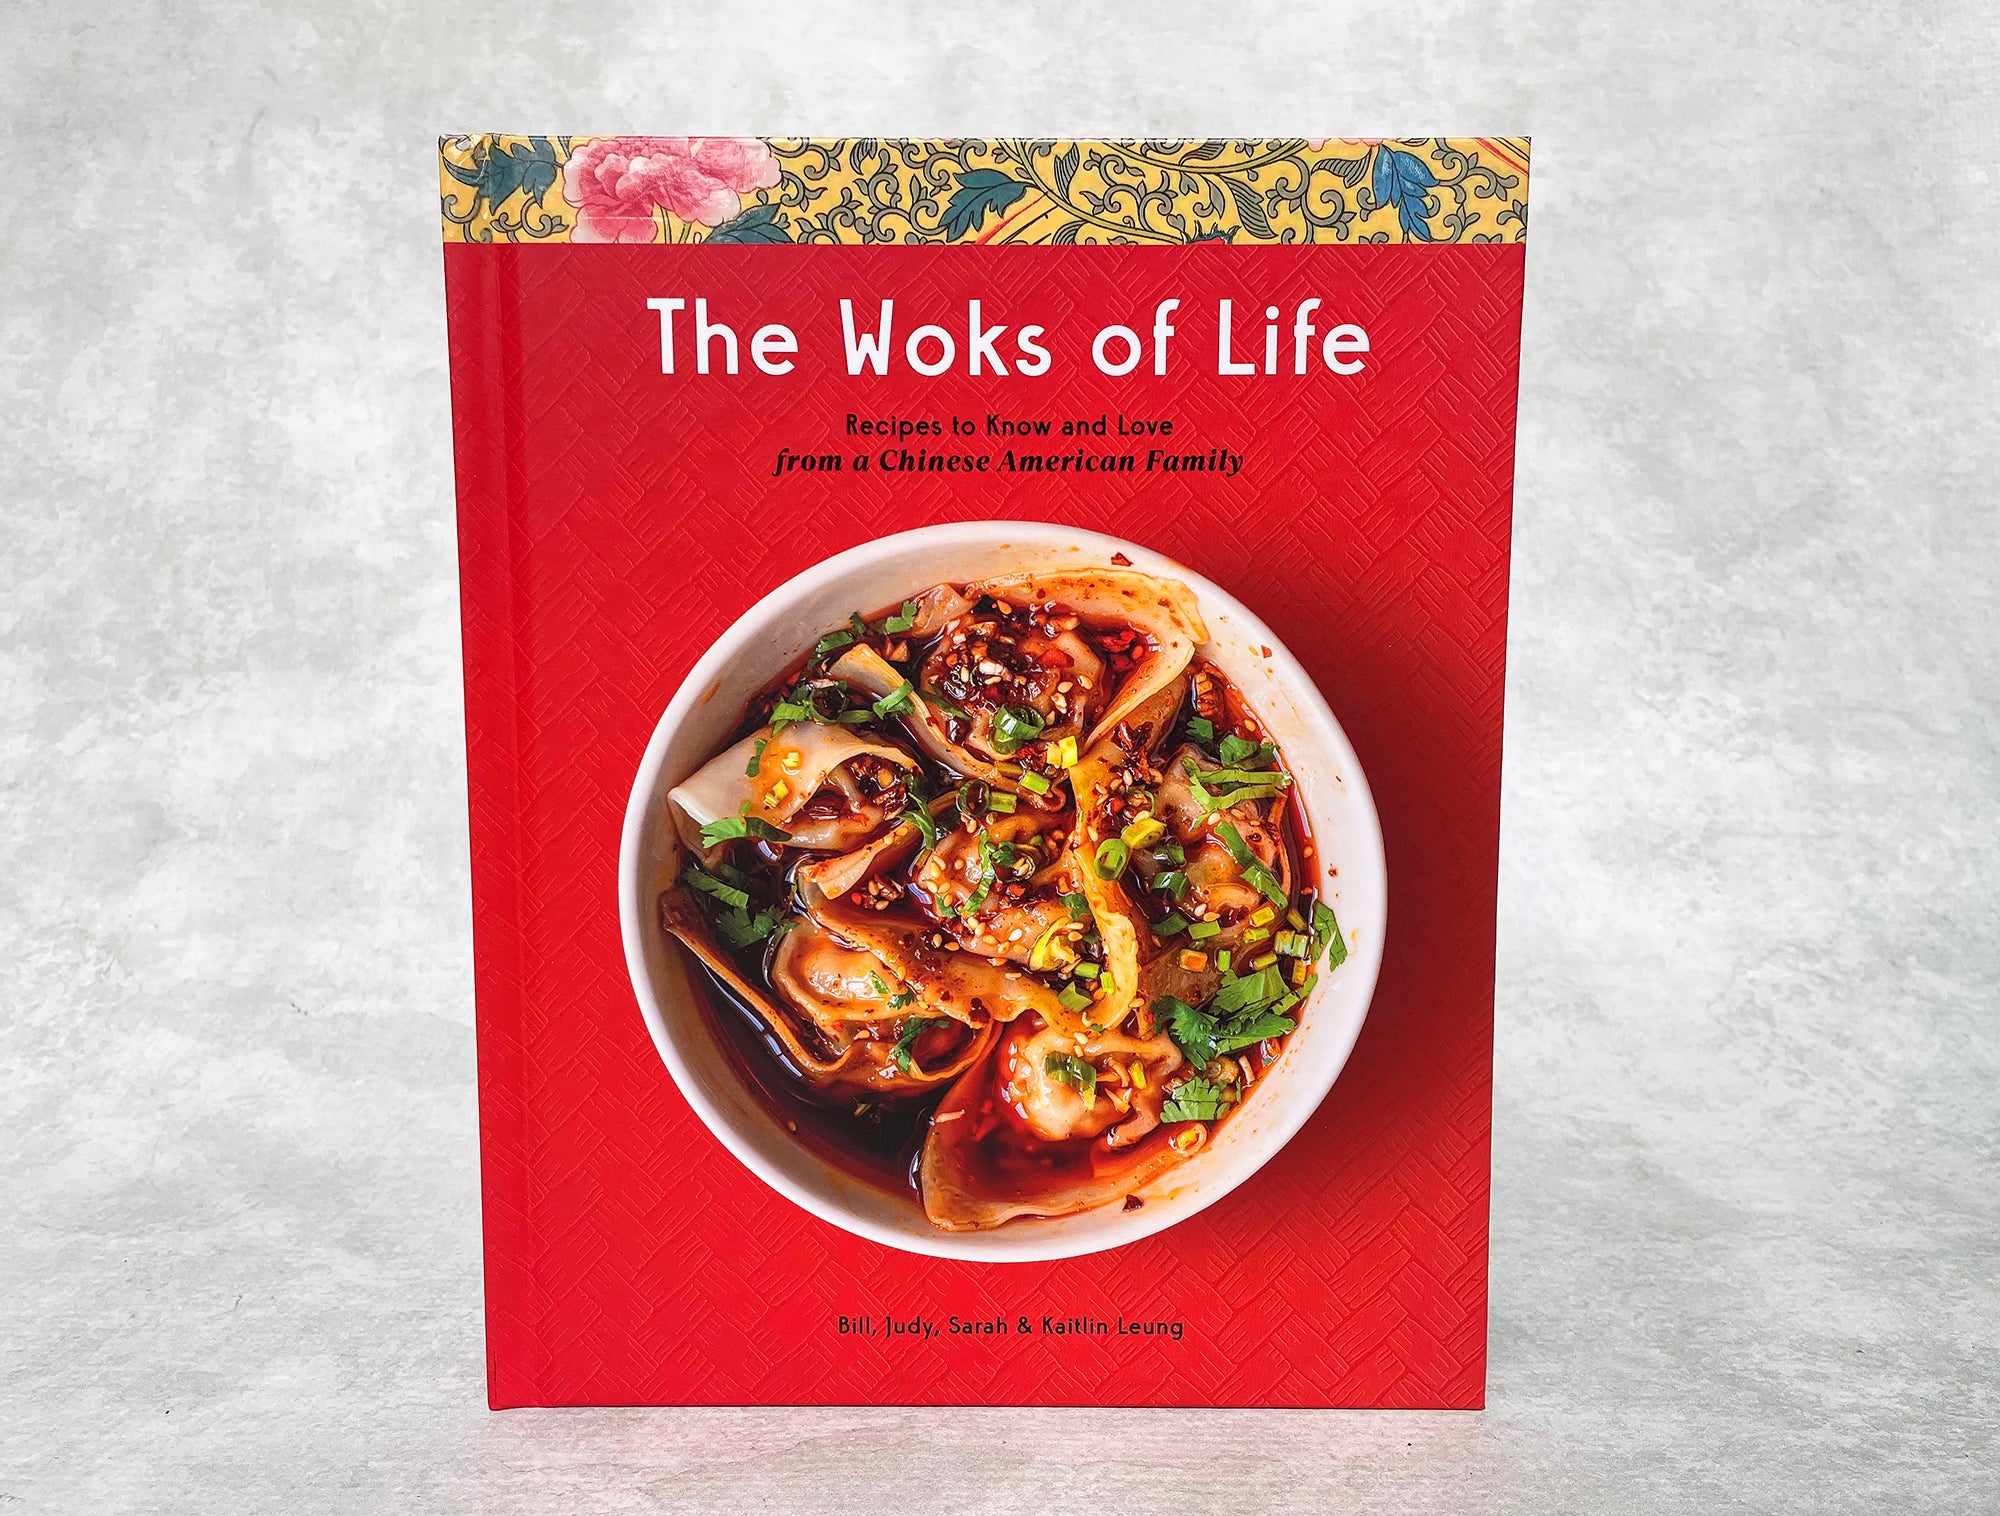 The Woks of Life cookbook